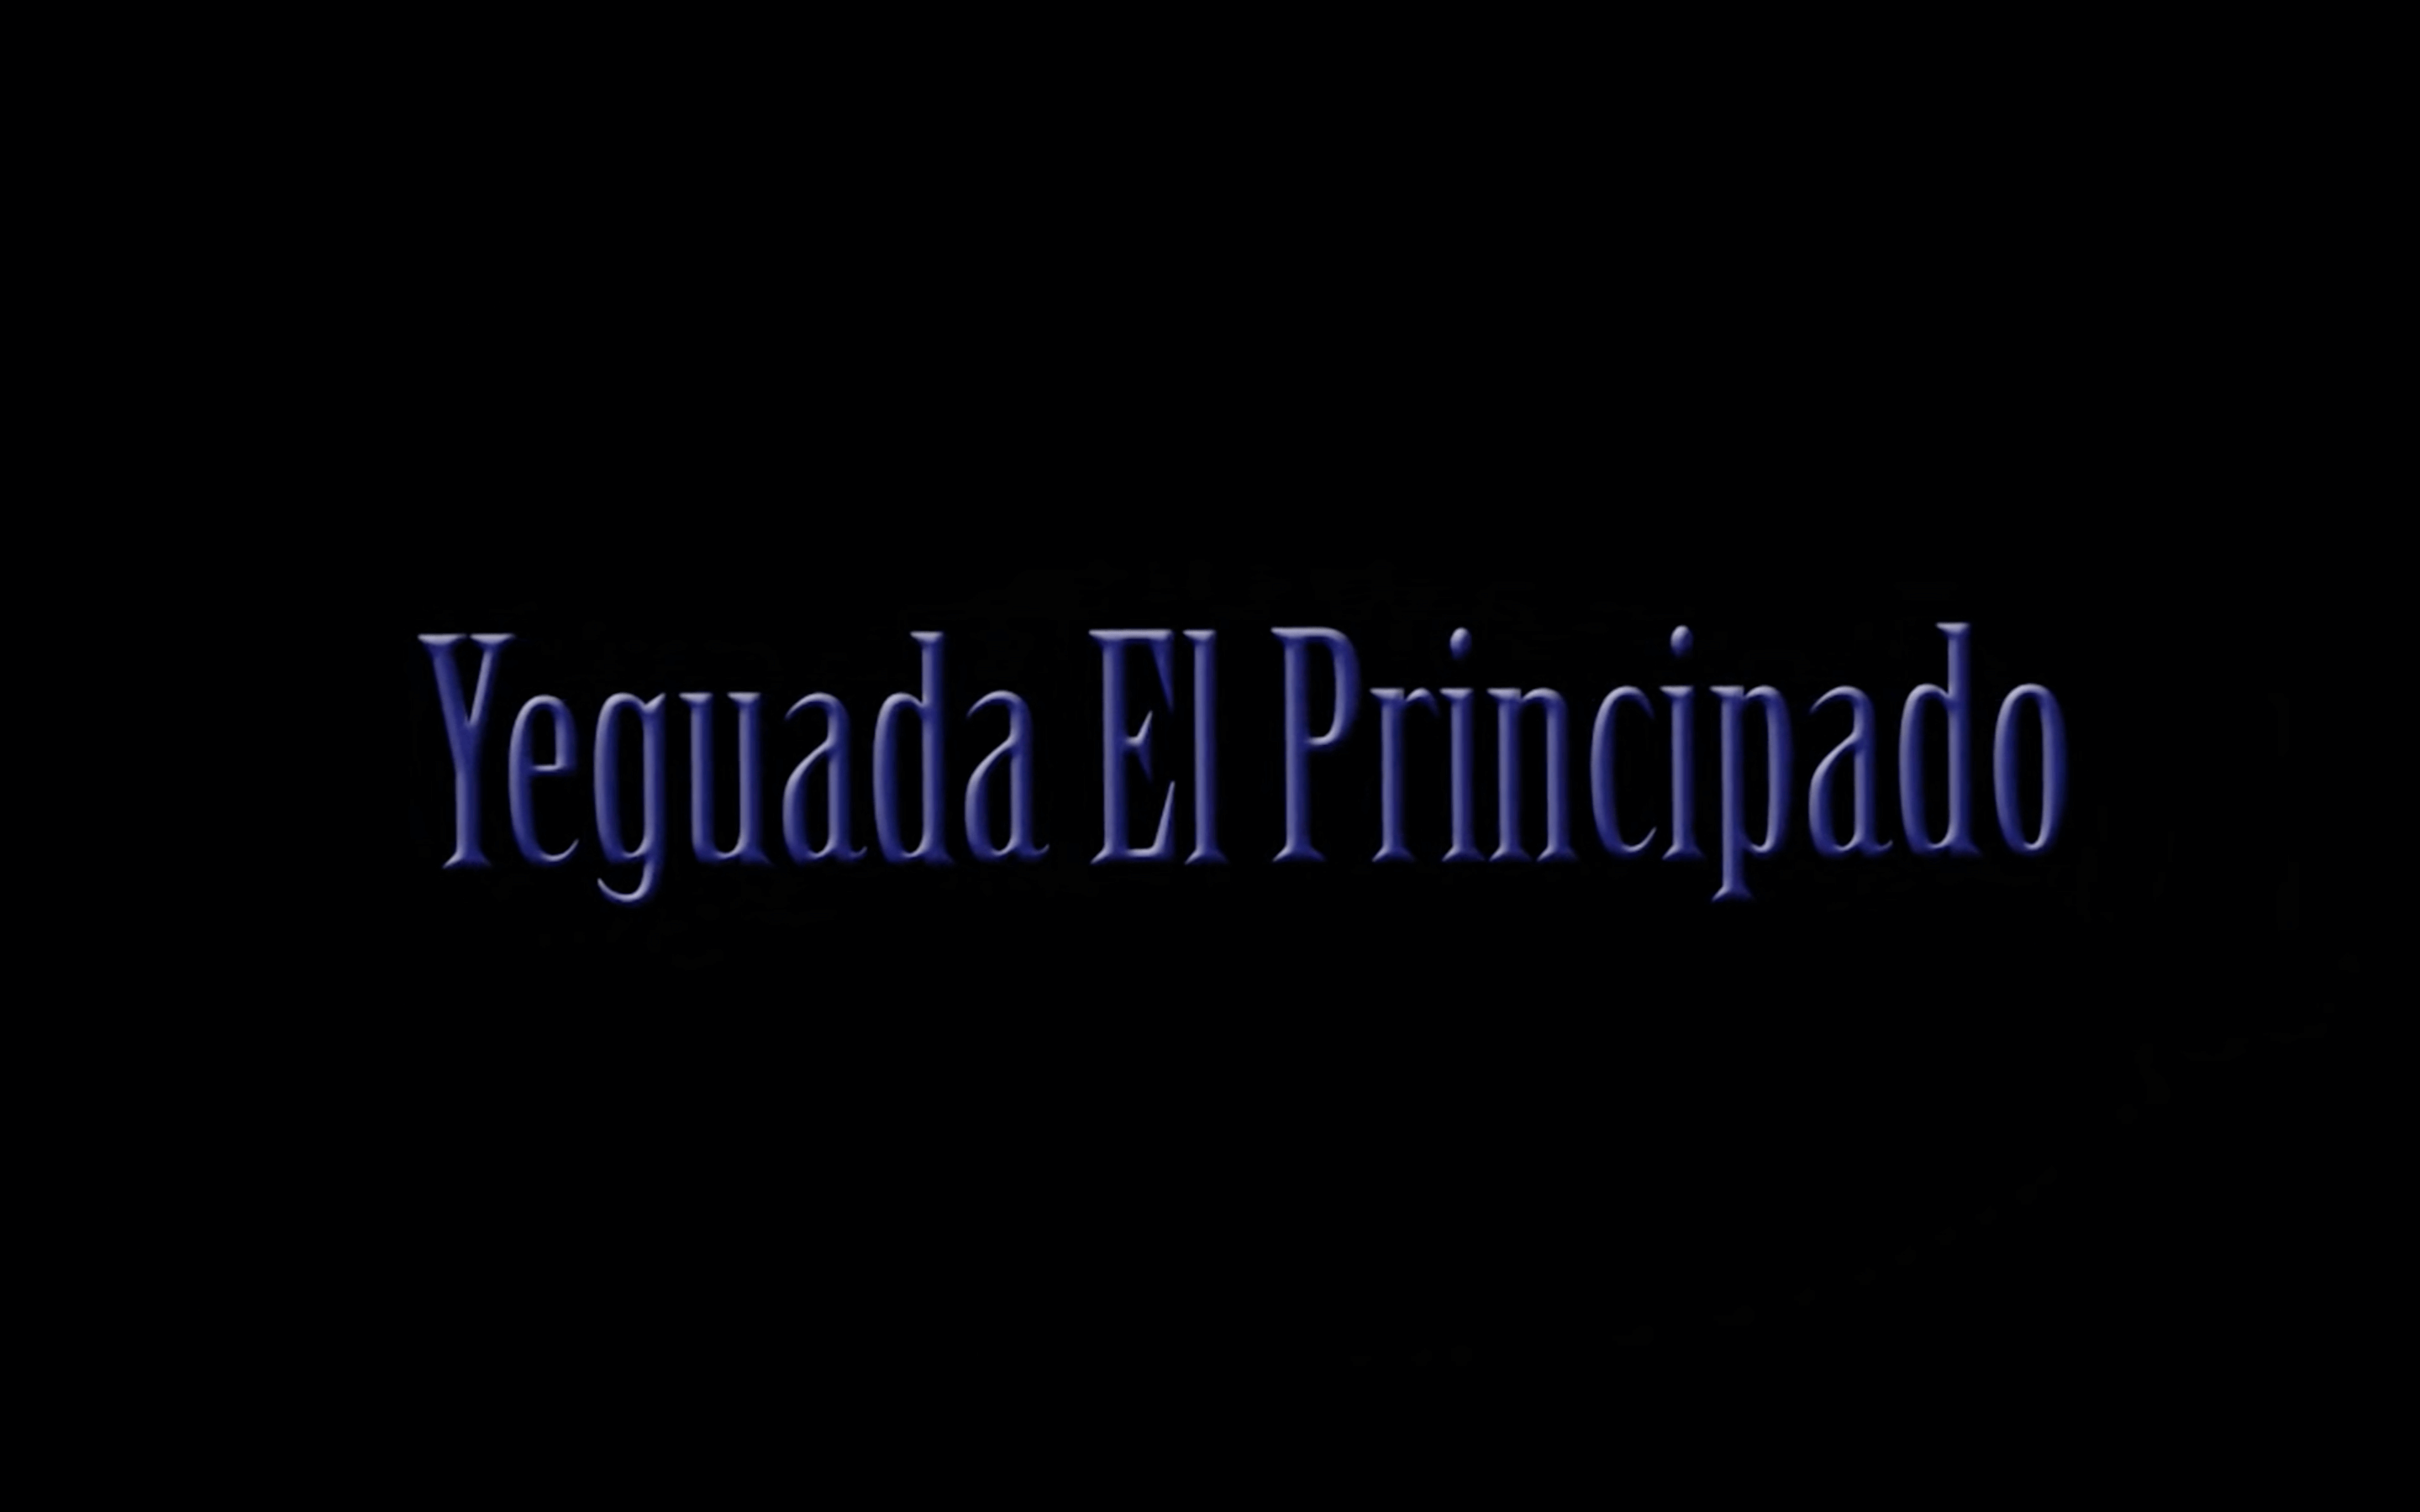 Yeguada El Principado